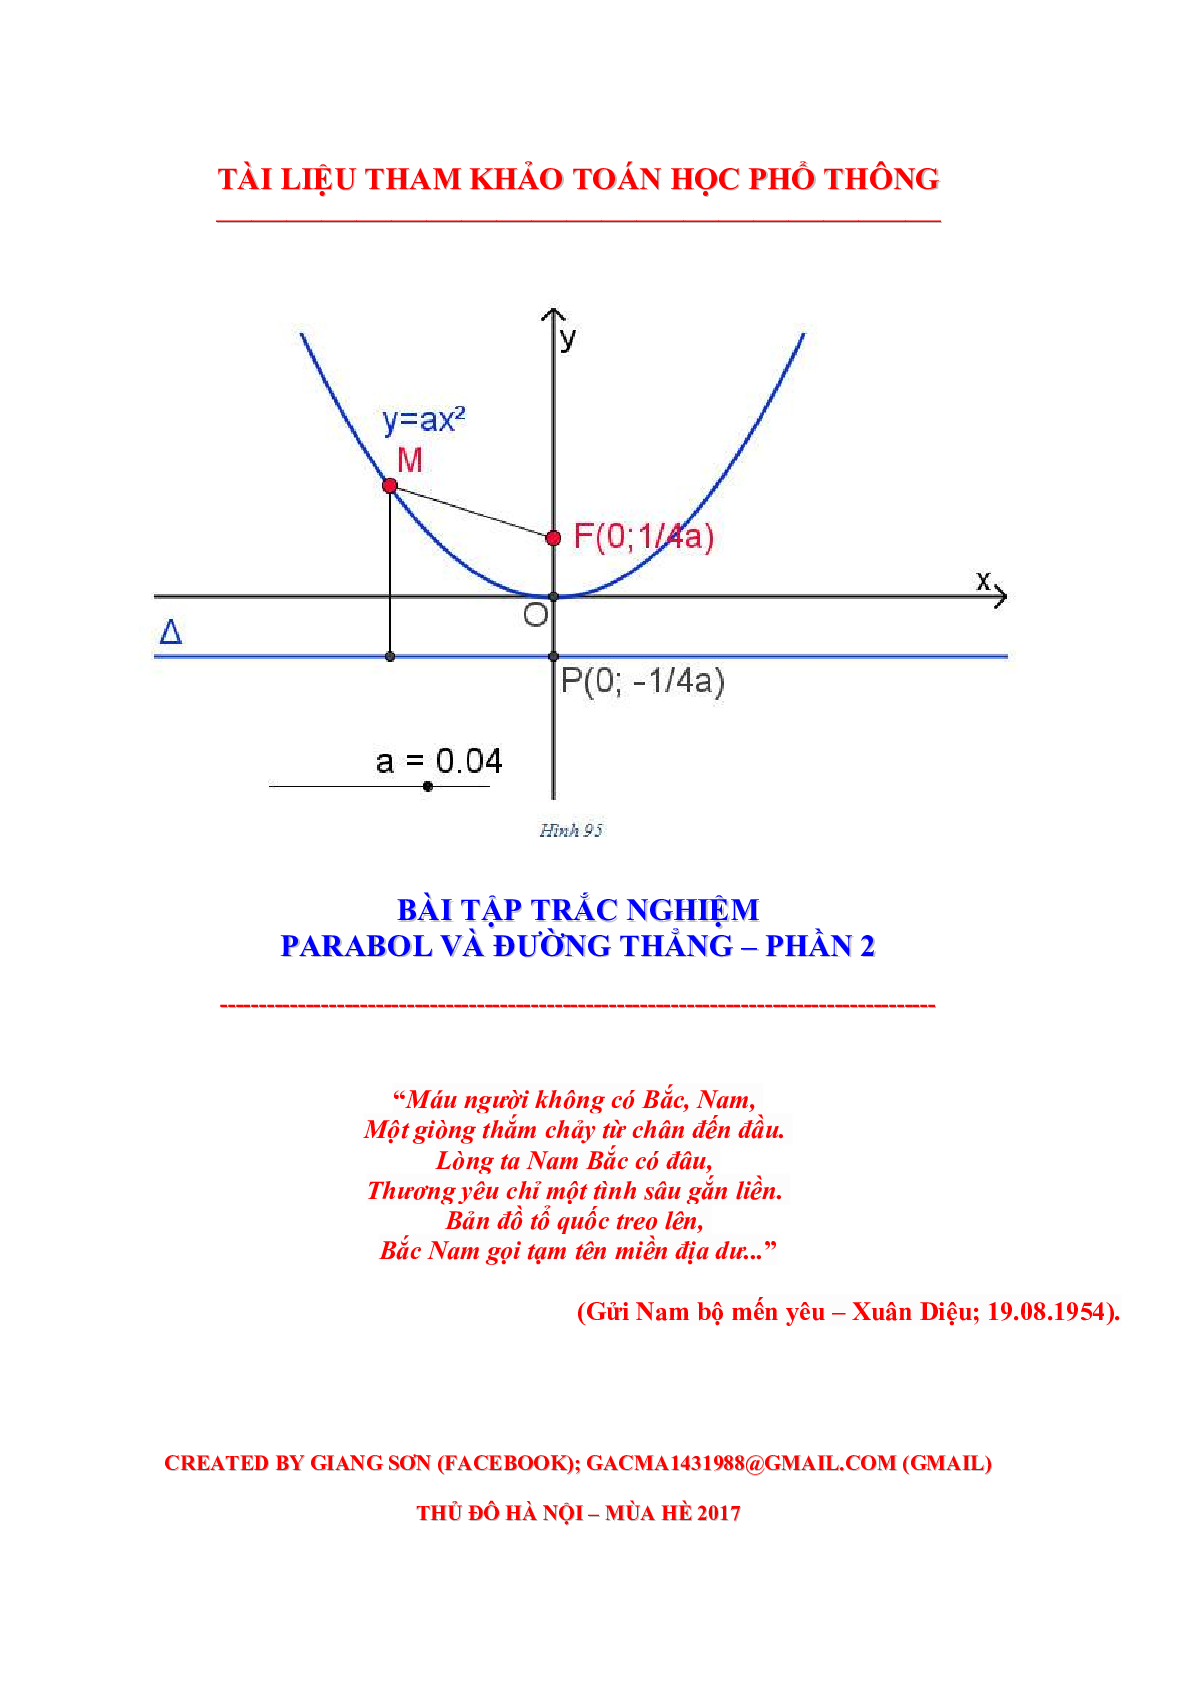 97 Bài tập trắc nghiệm Parabol và đường thẳng phần 2 (trang 1)